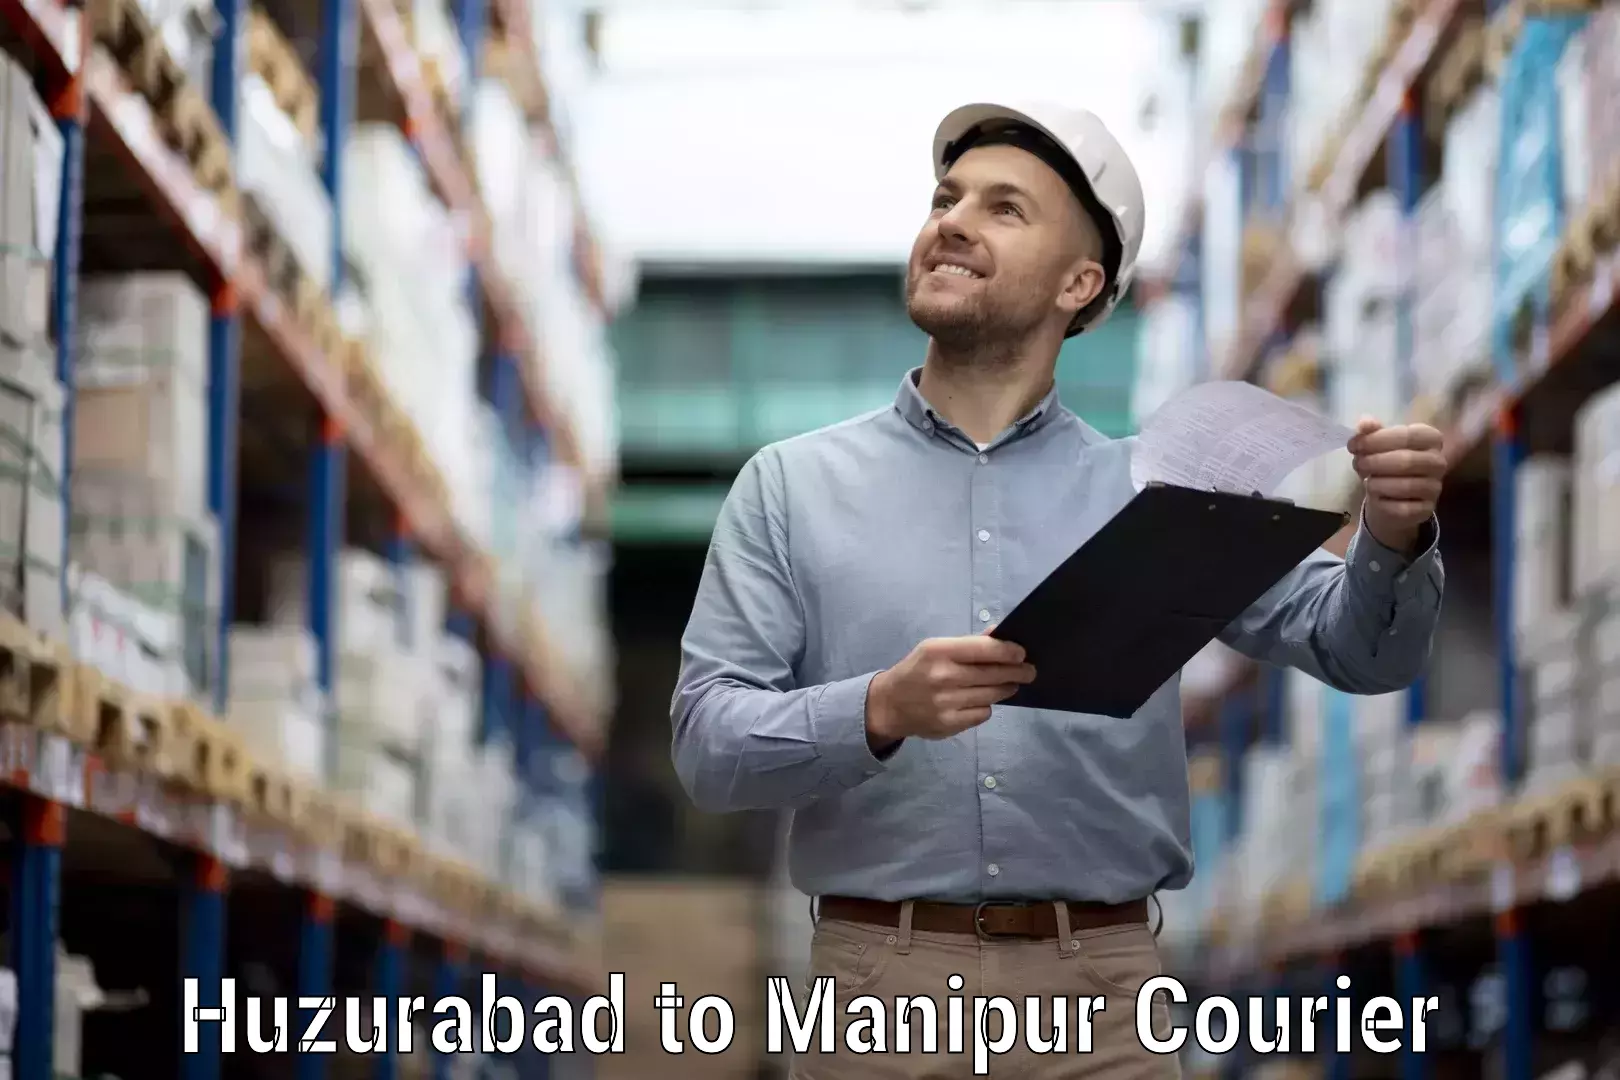 Multi-city courier Huzurabad to Senapati